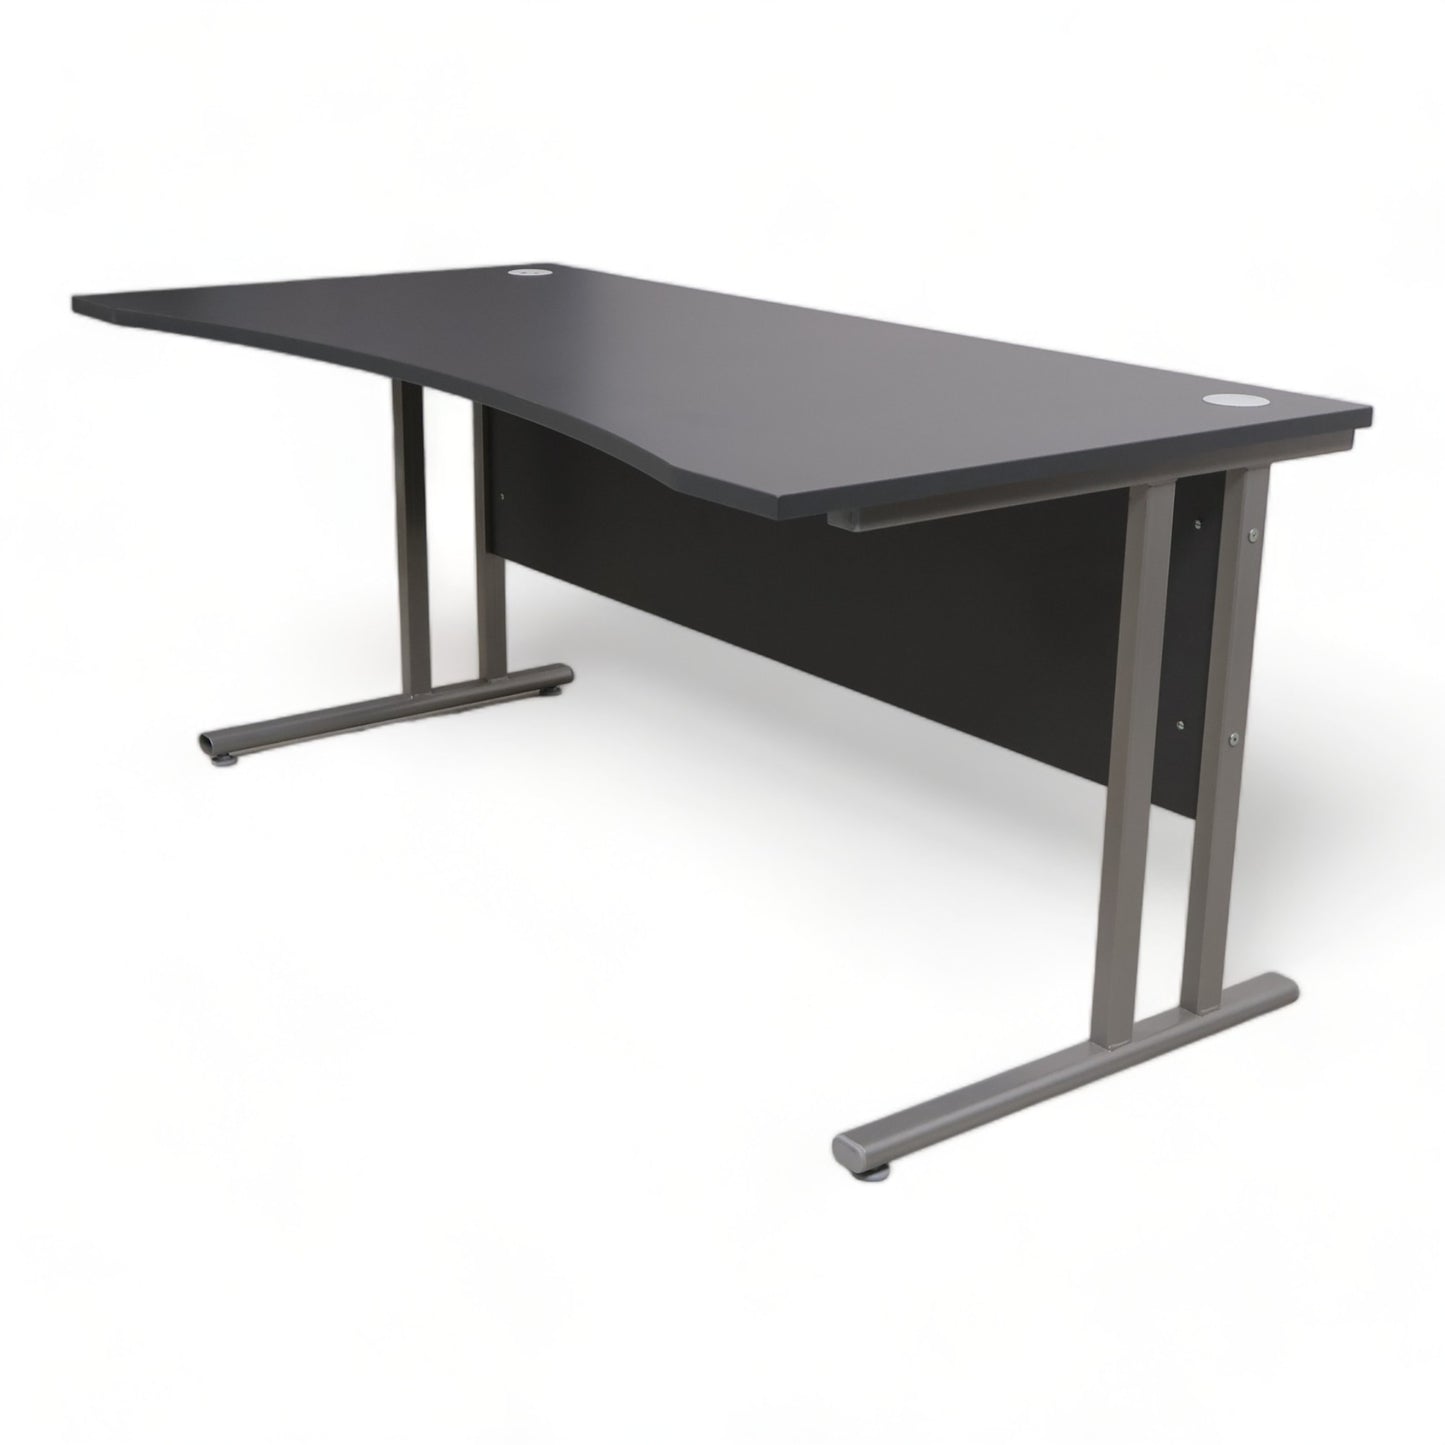 Kvalitetssikret | Flexus skrivebord med magebue fra AJ produkter